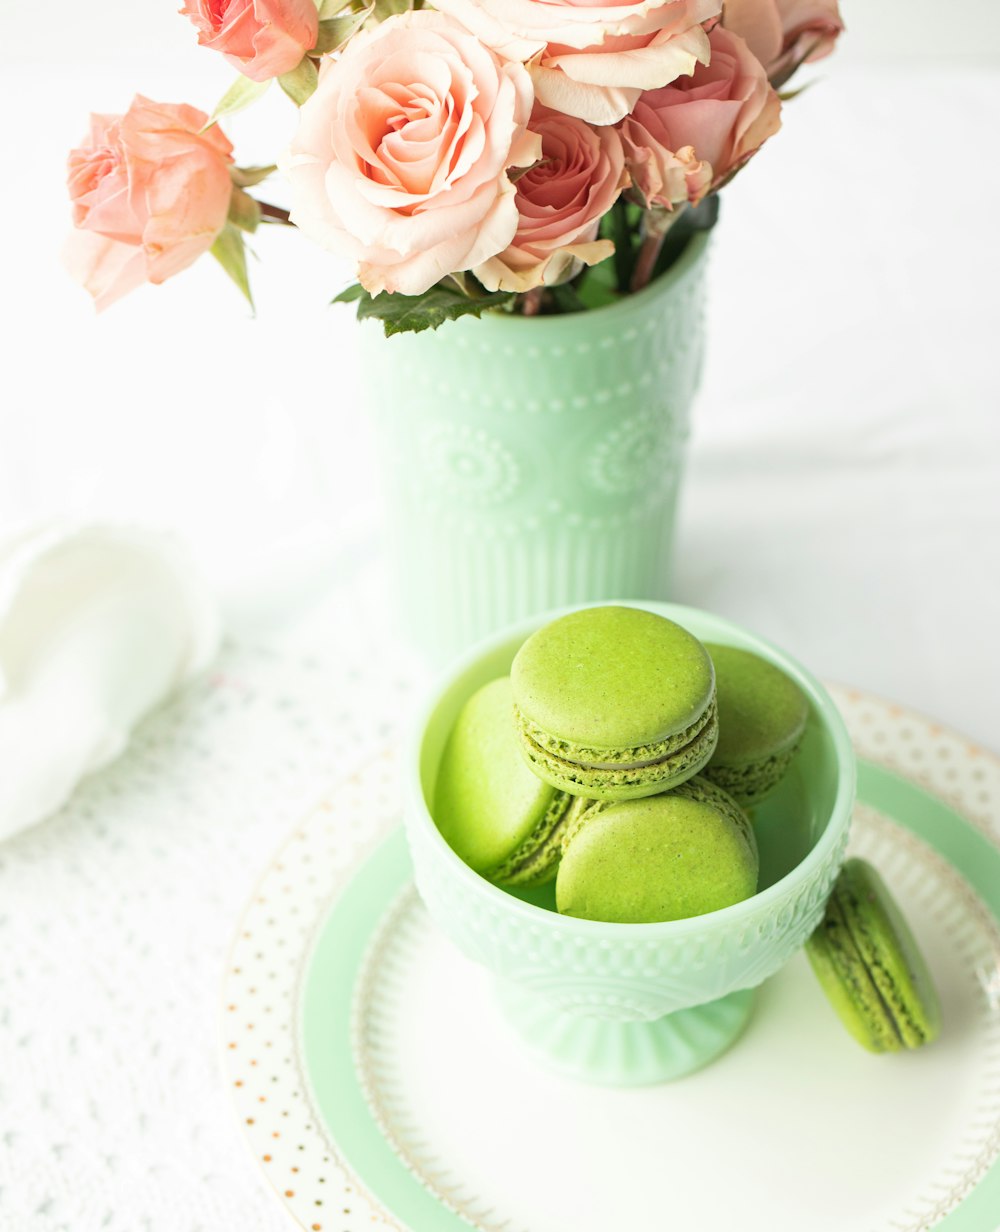 green egg on white ceramic bowl beside pink flowers